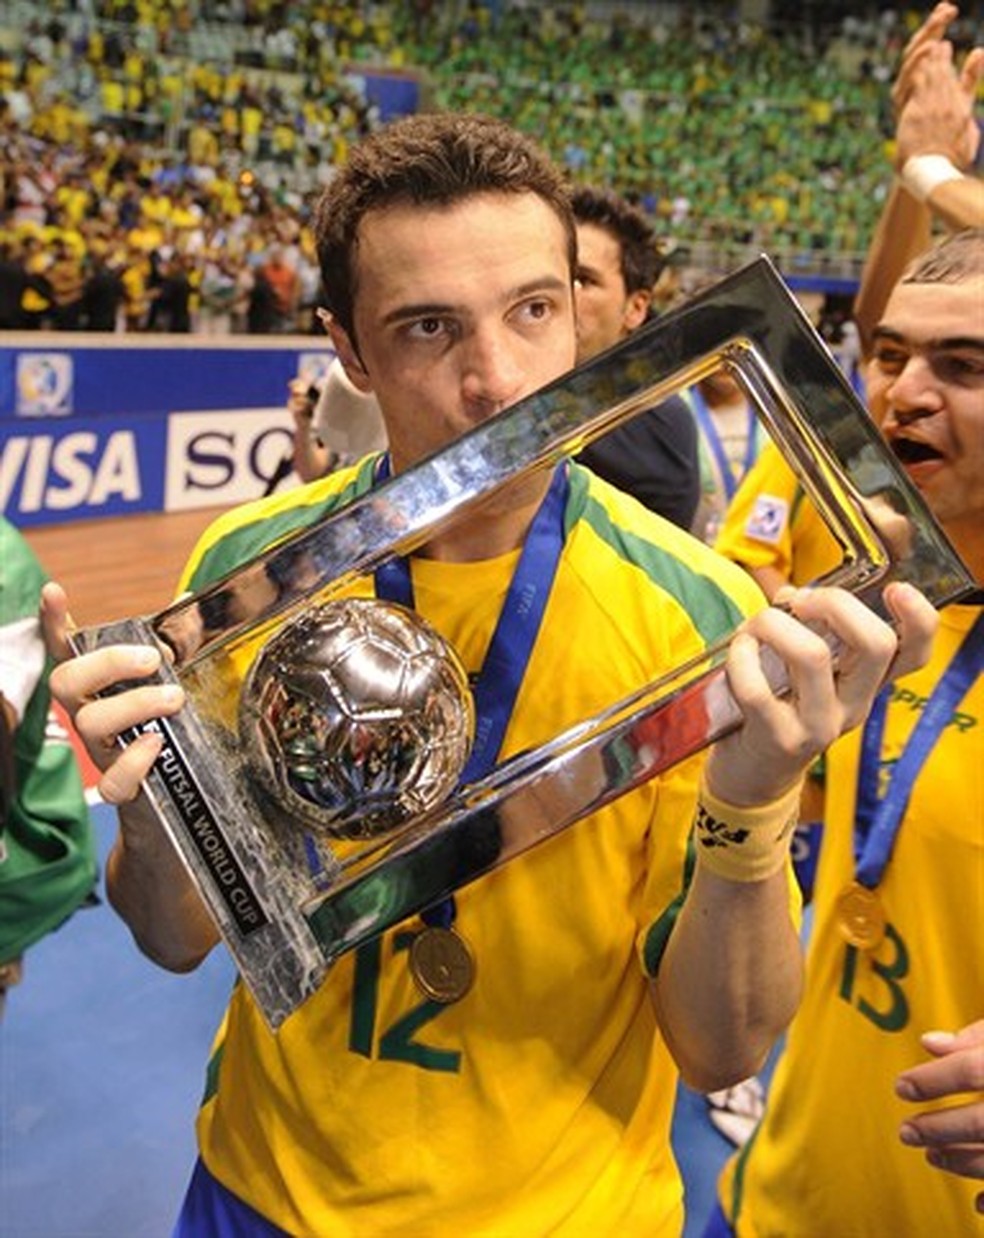 Hexa mundial do Brasil completa 10 anos; saiba por onde andam os campeões –  LNF